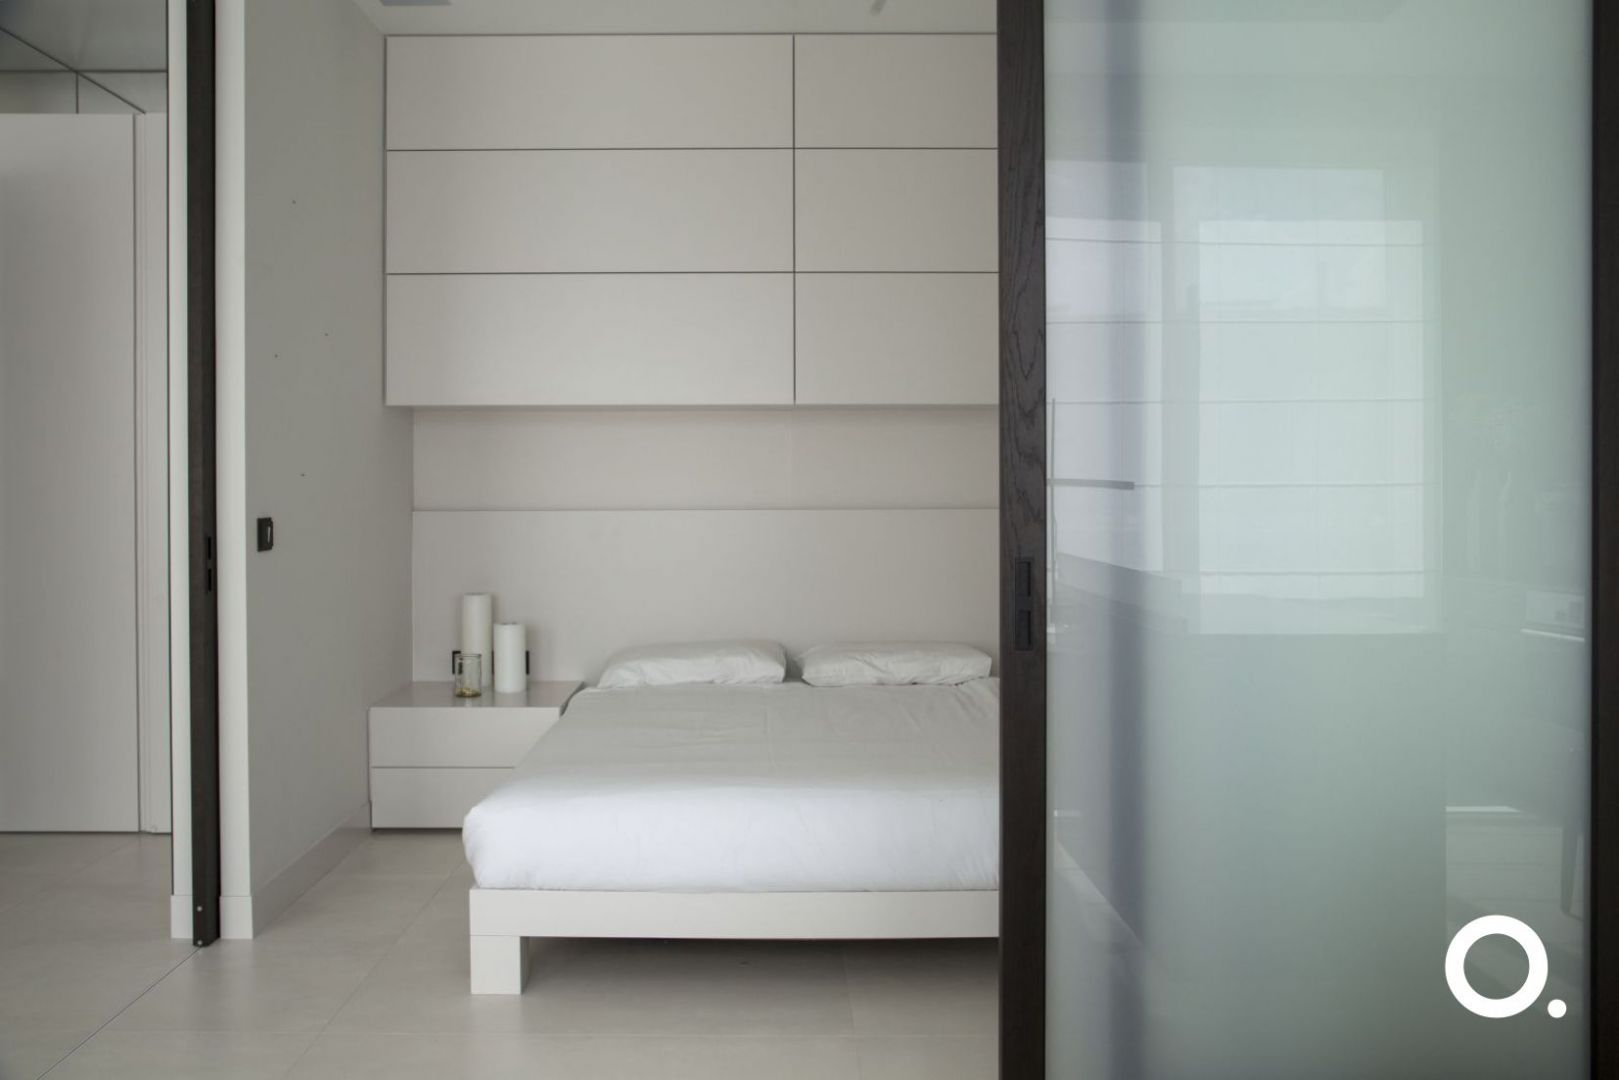 Dzięki drzwiom przesuwnym skomponowano ruchomą ścianę, która oddziela minimalistyczną, surową sypialnię od części dziennej mieszkania. Fot. Studio O.